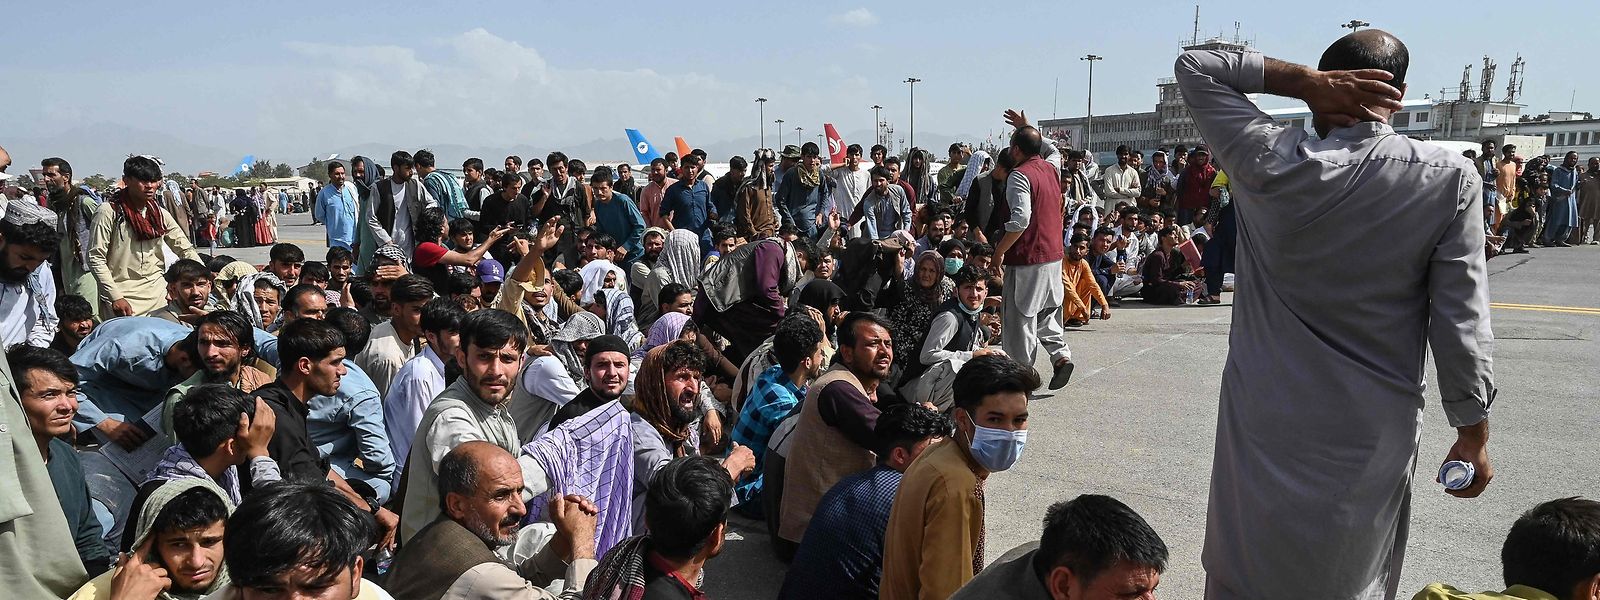 Am Flughafen von Kabul warten verzweifelte Menschen auf die Möglichkeit zur Flucht.